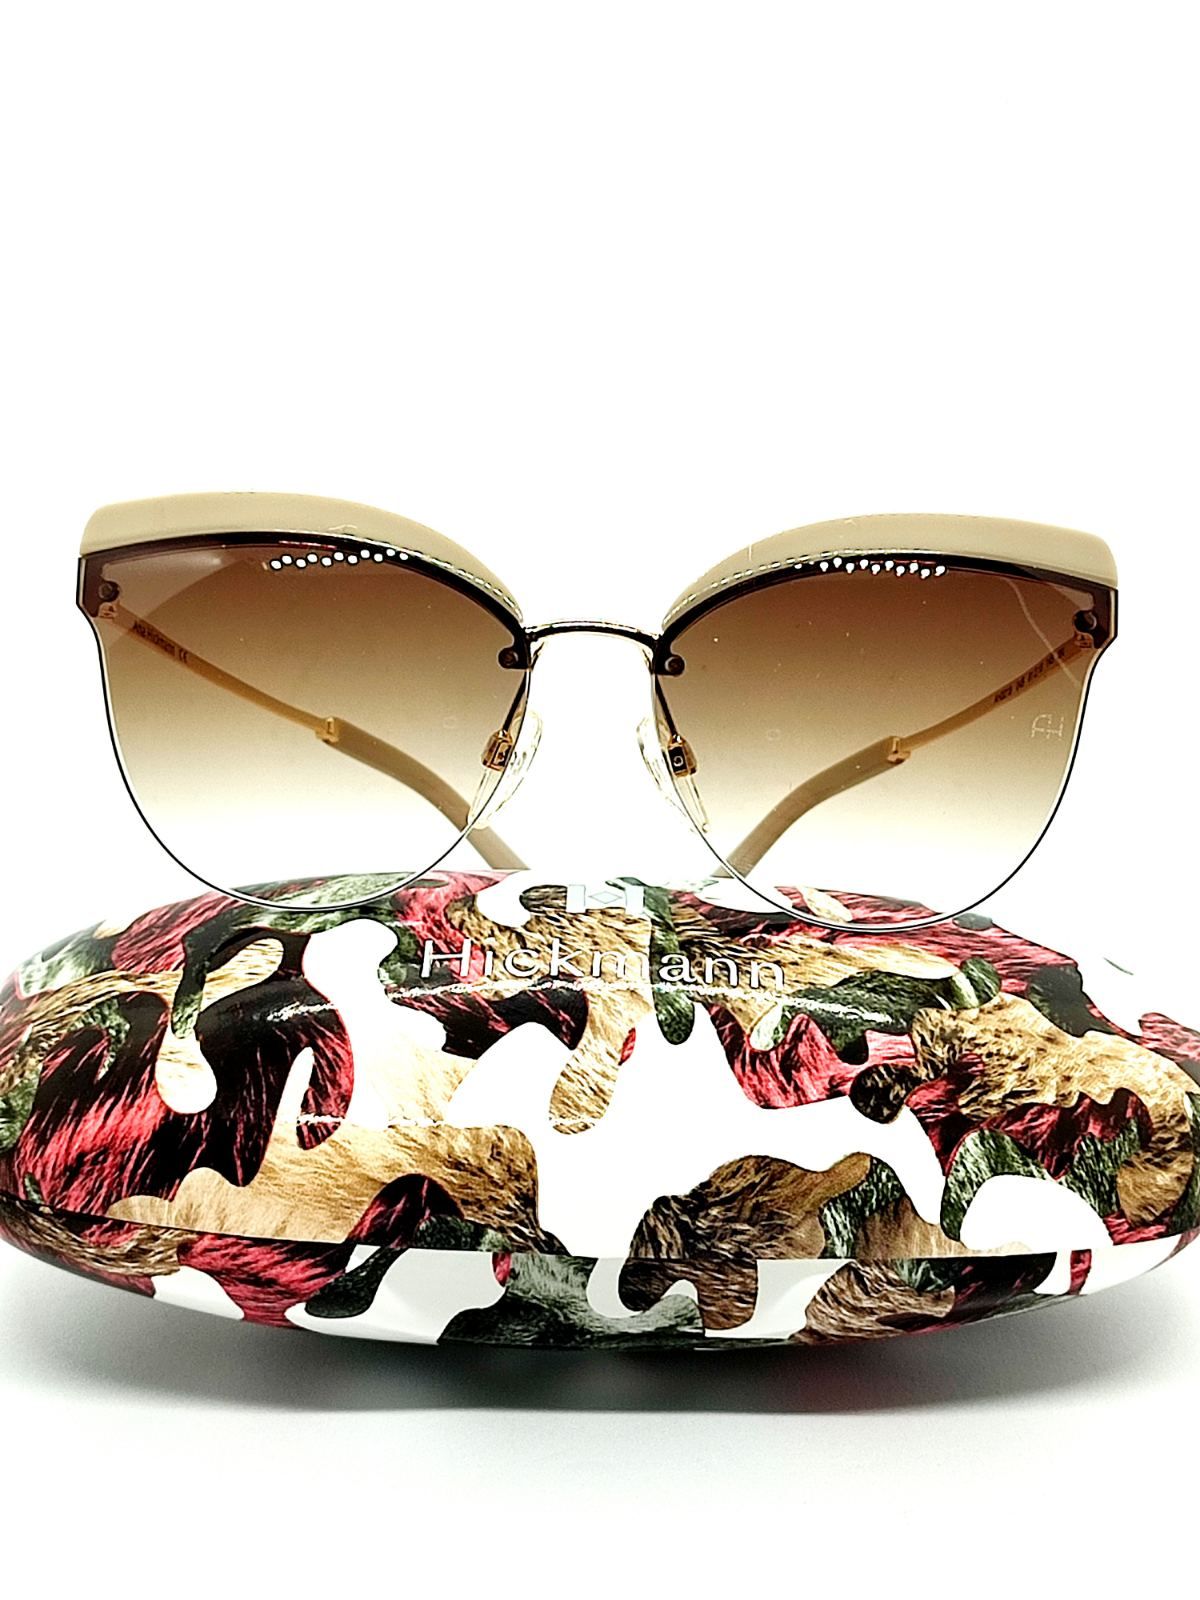 Солнцезащитные очки женские Hickmann 3214 коричневые